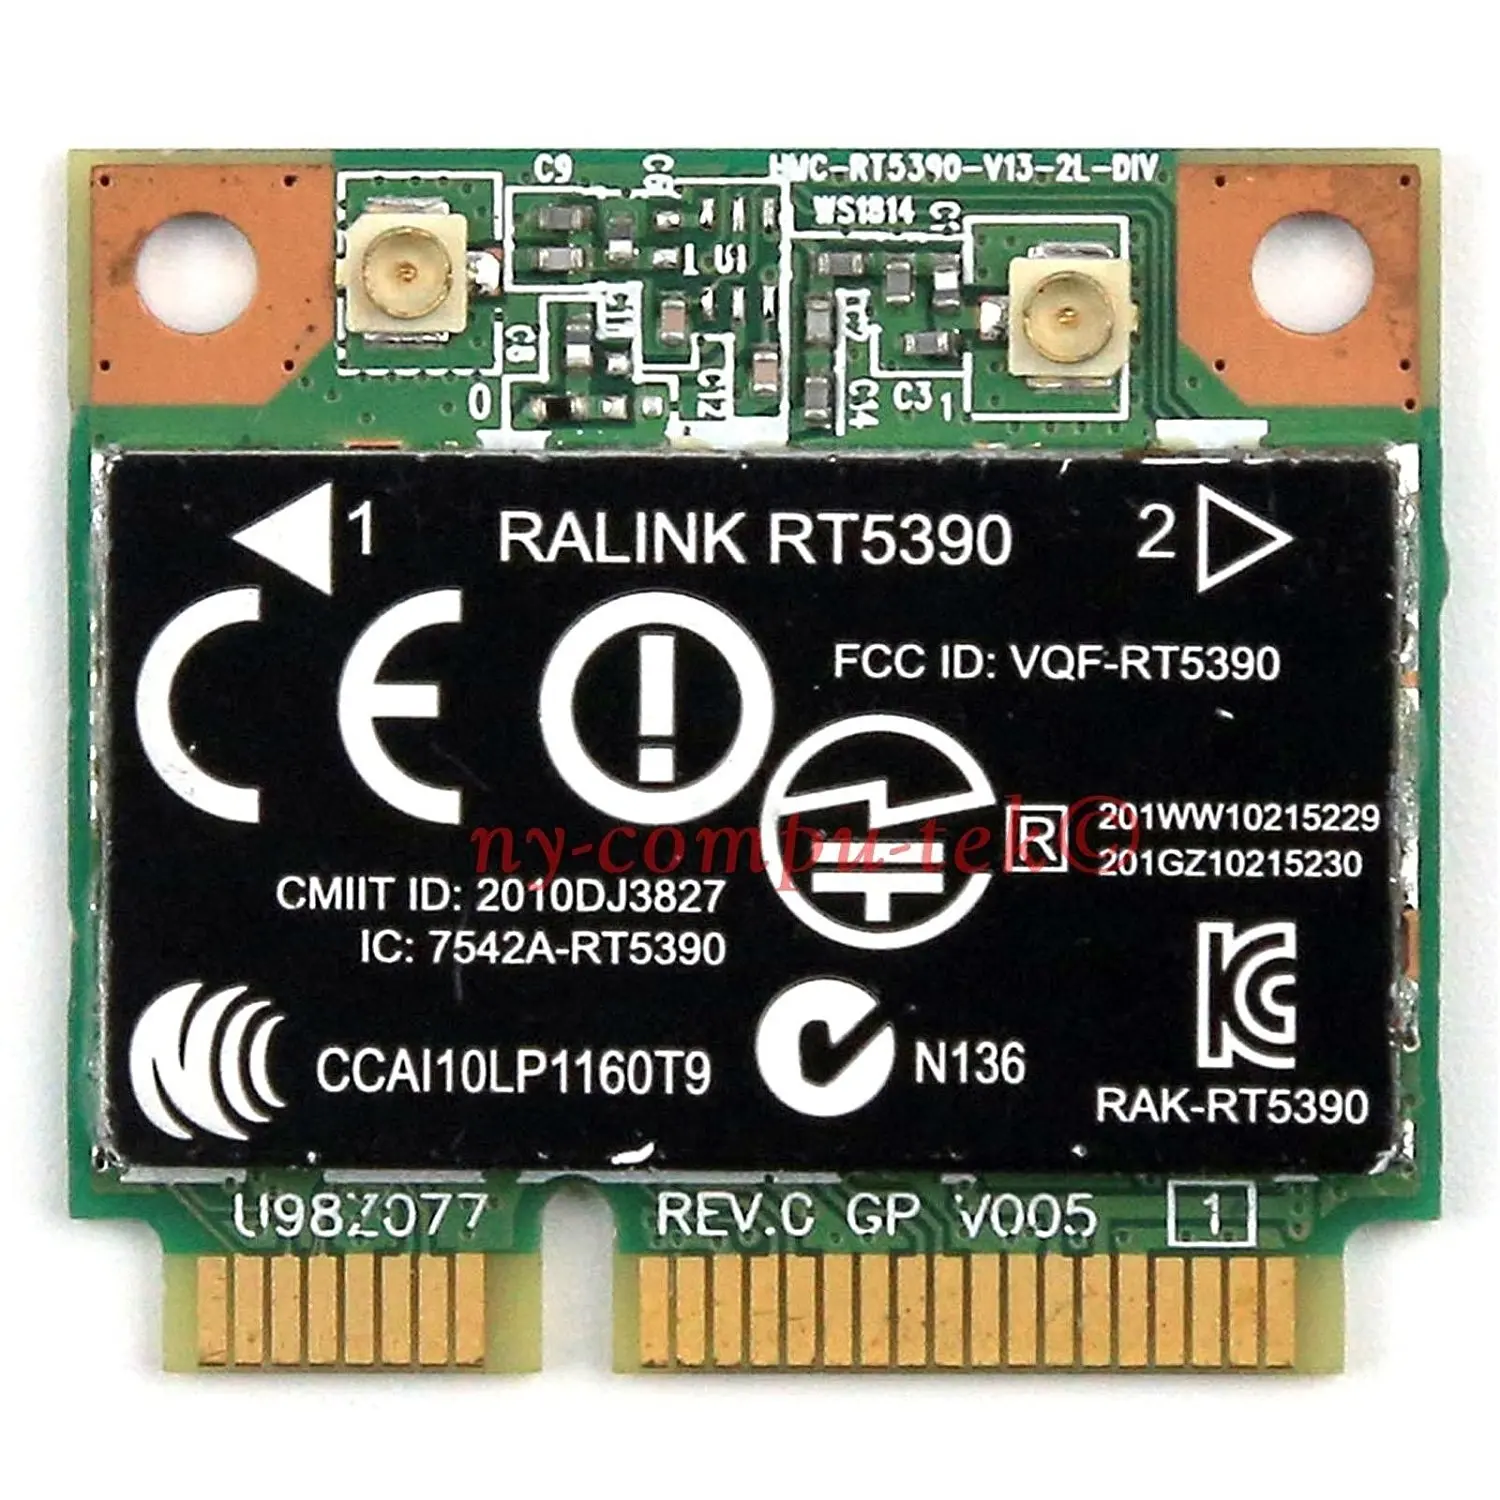 ralink rt2870 wireless lan card version 1.5.19.2